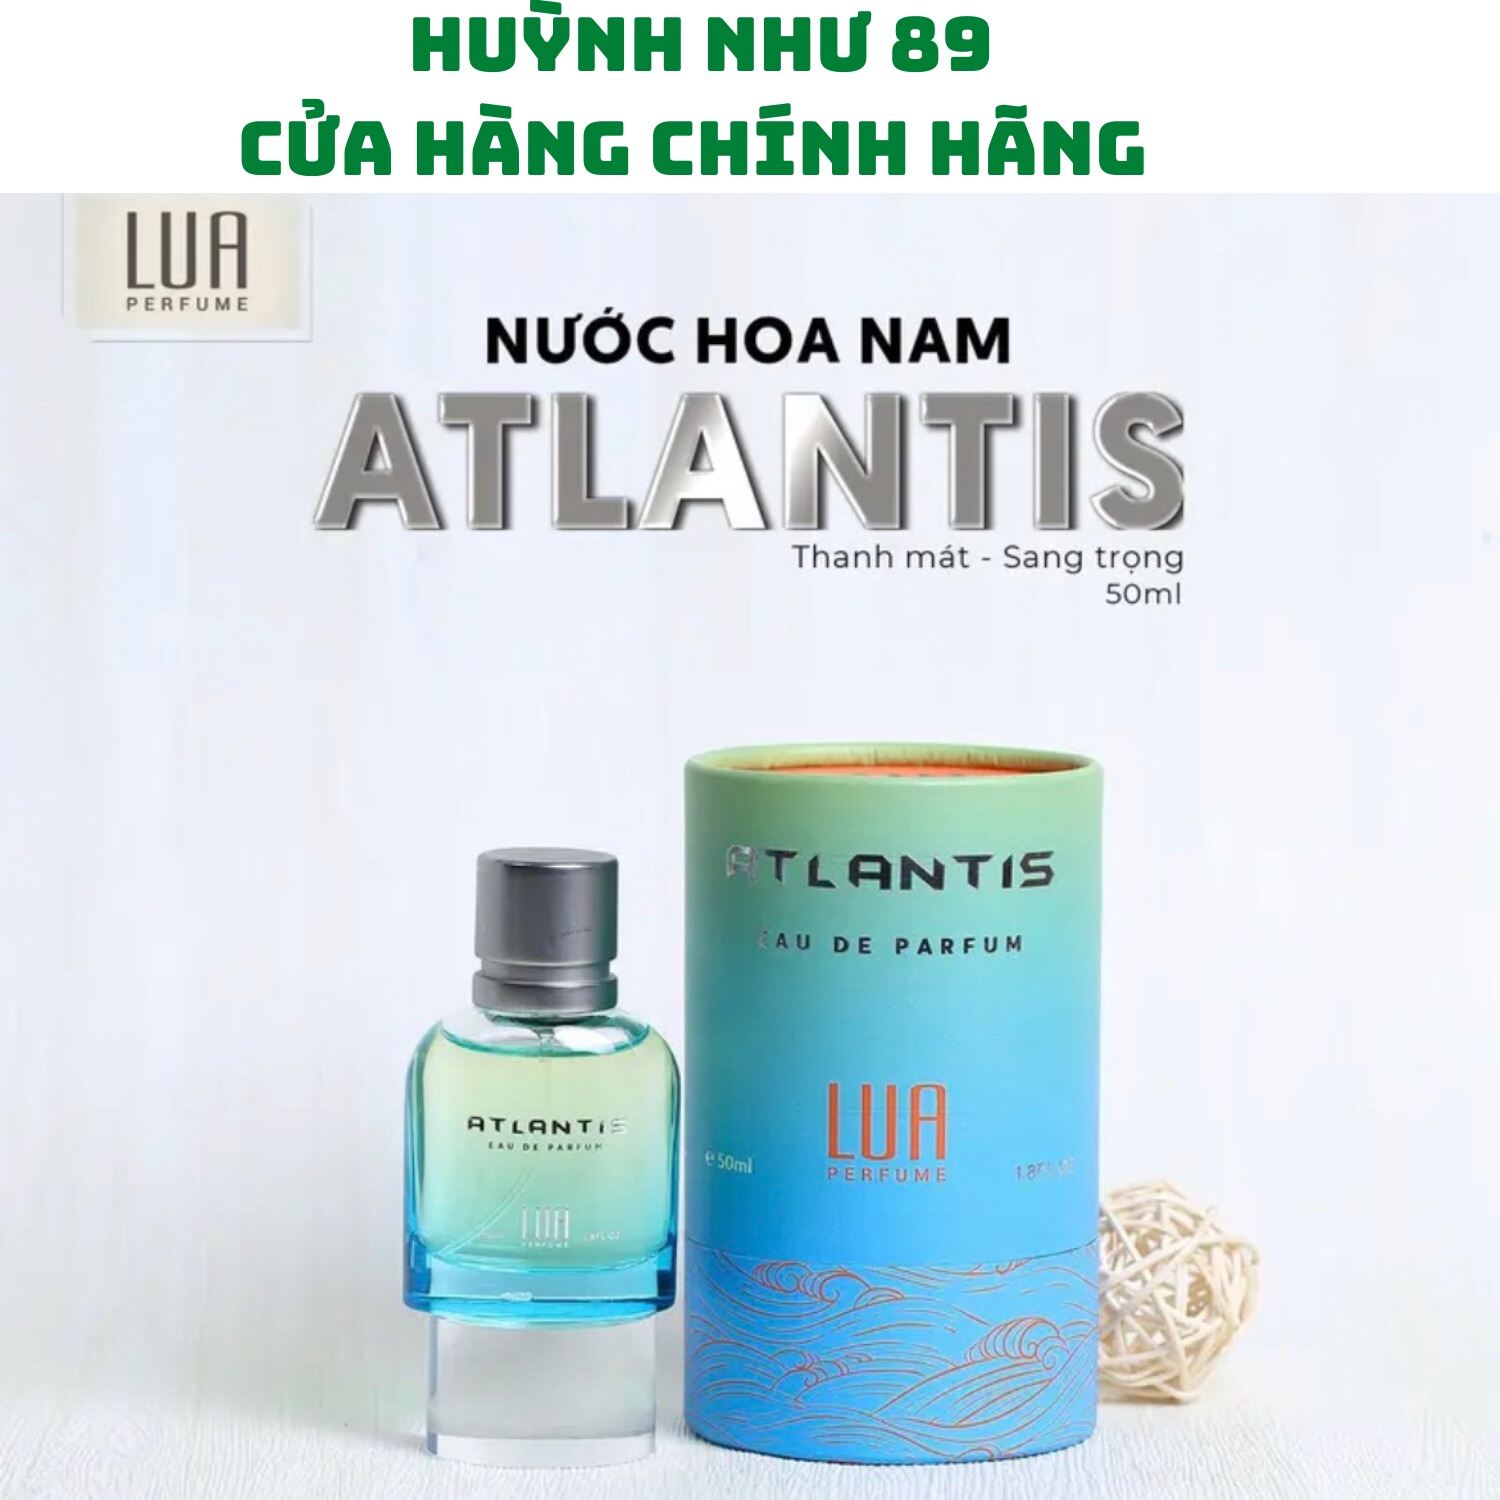 Nước Hoa nam Atlantics Lua Perfume